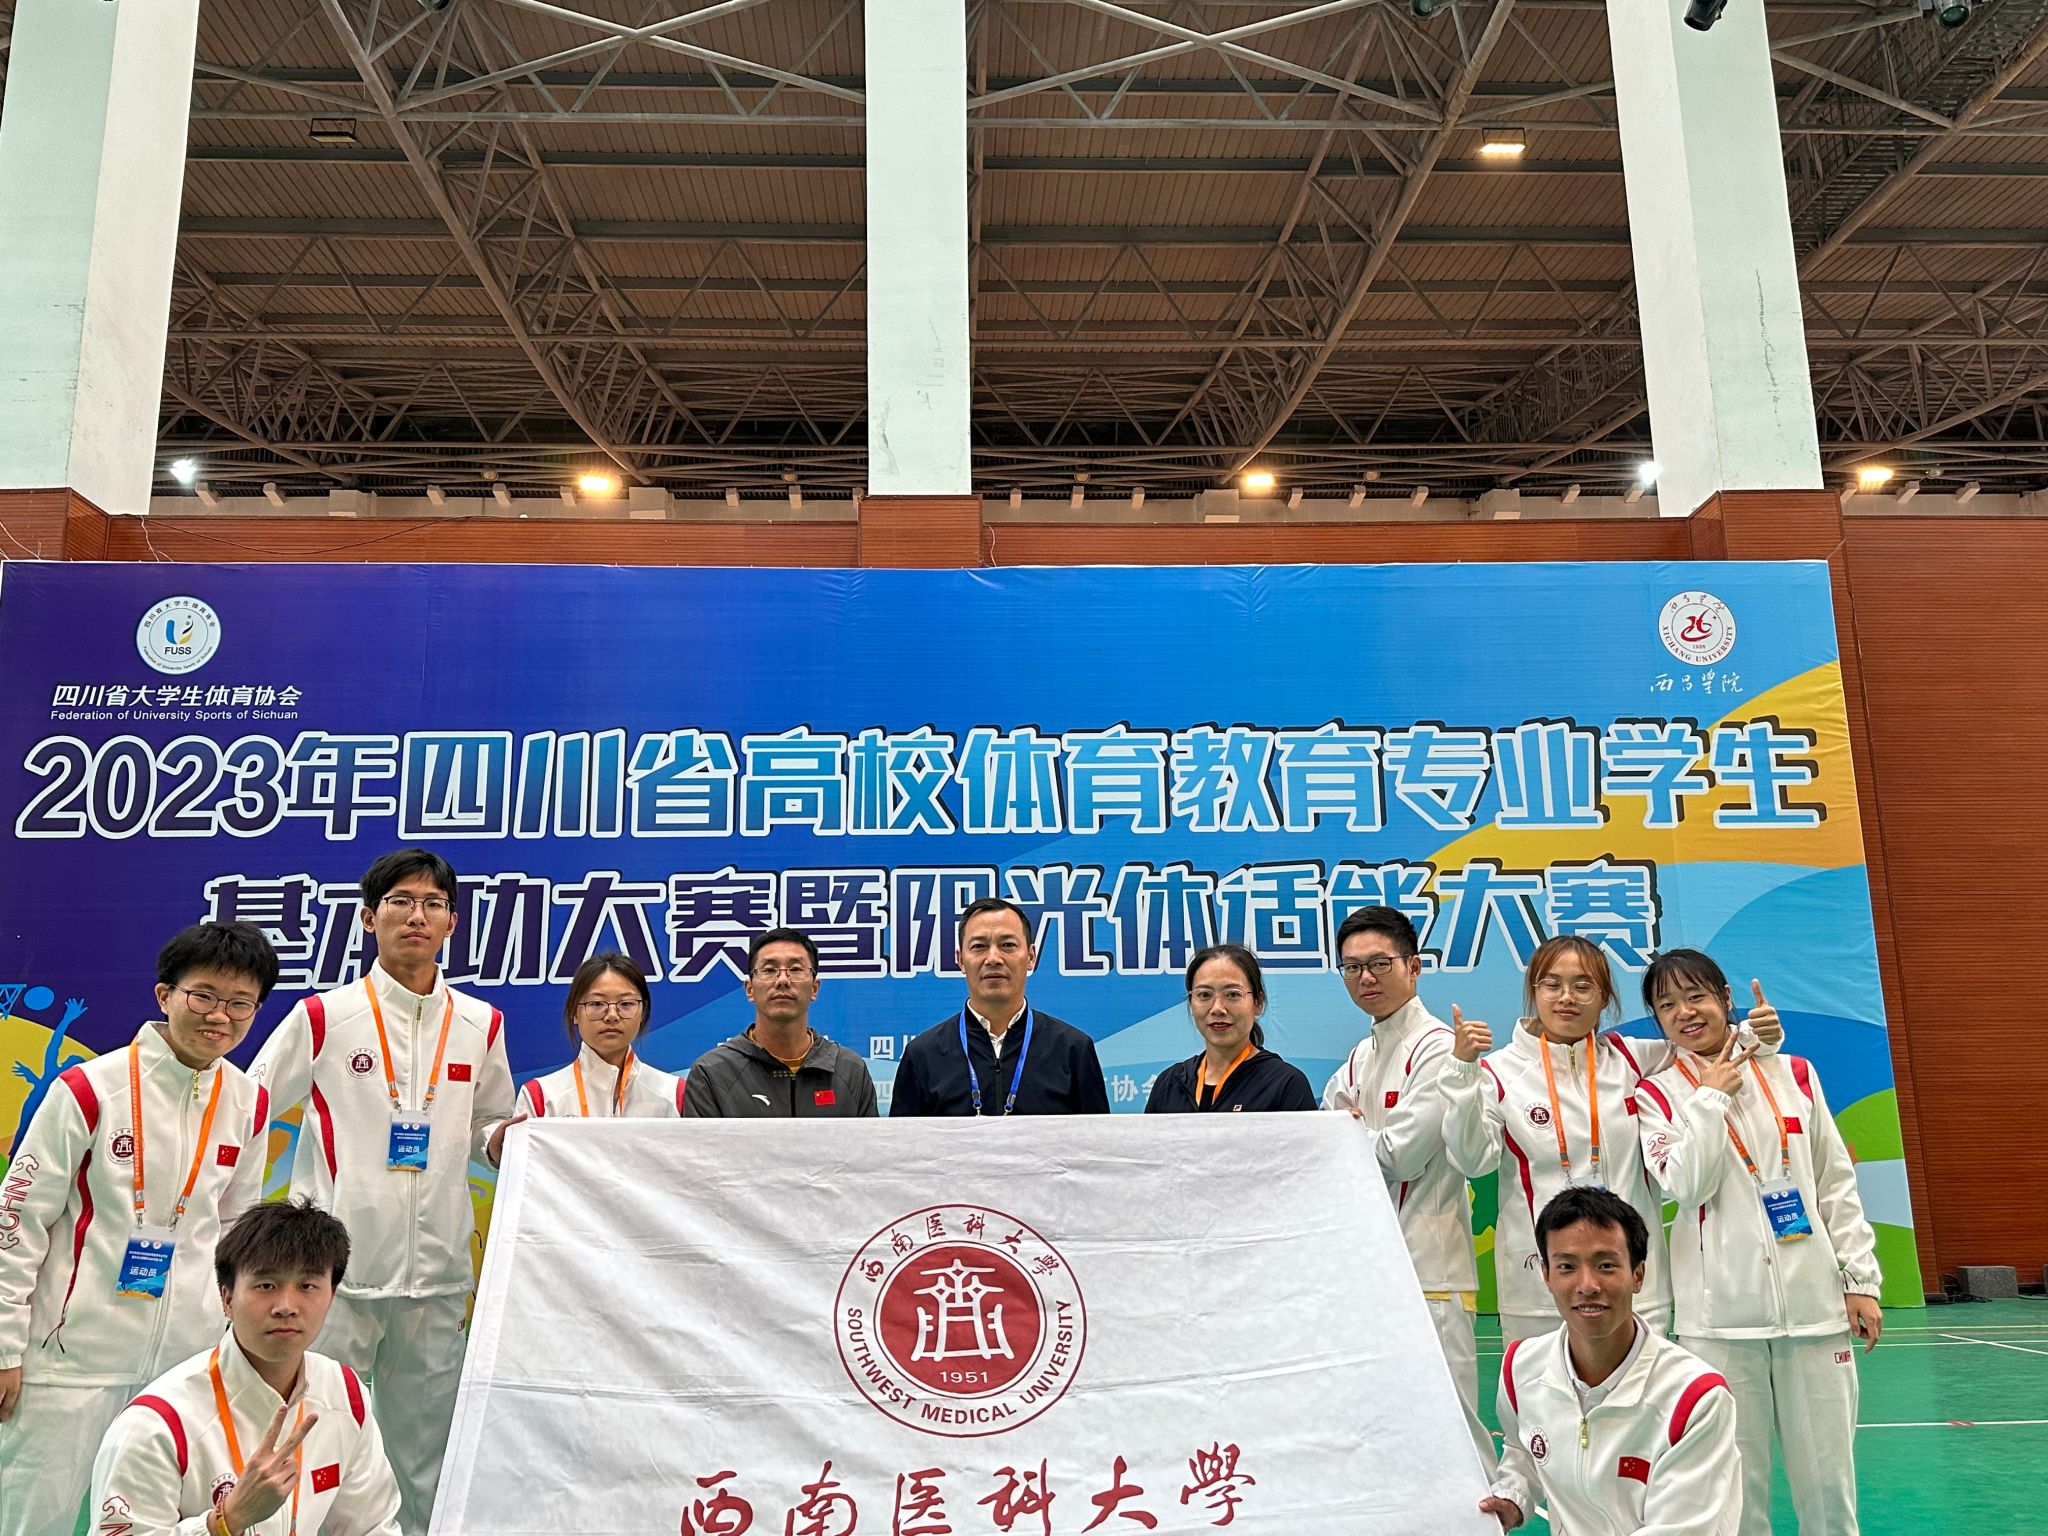 学校代表队在2023年四川省高校体育教育专业学生基本功大赛暨阳光体适能大赛中获佳绩